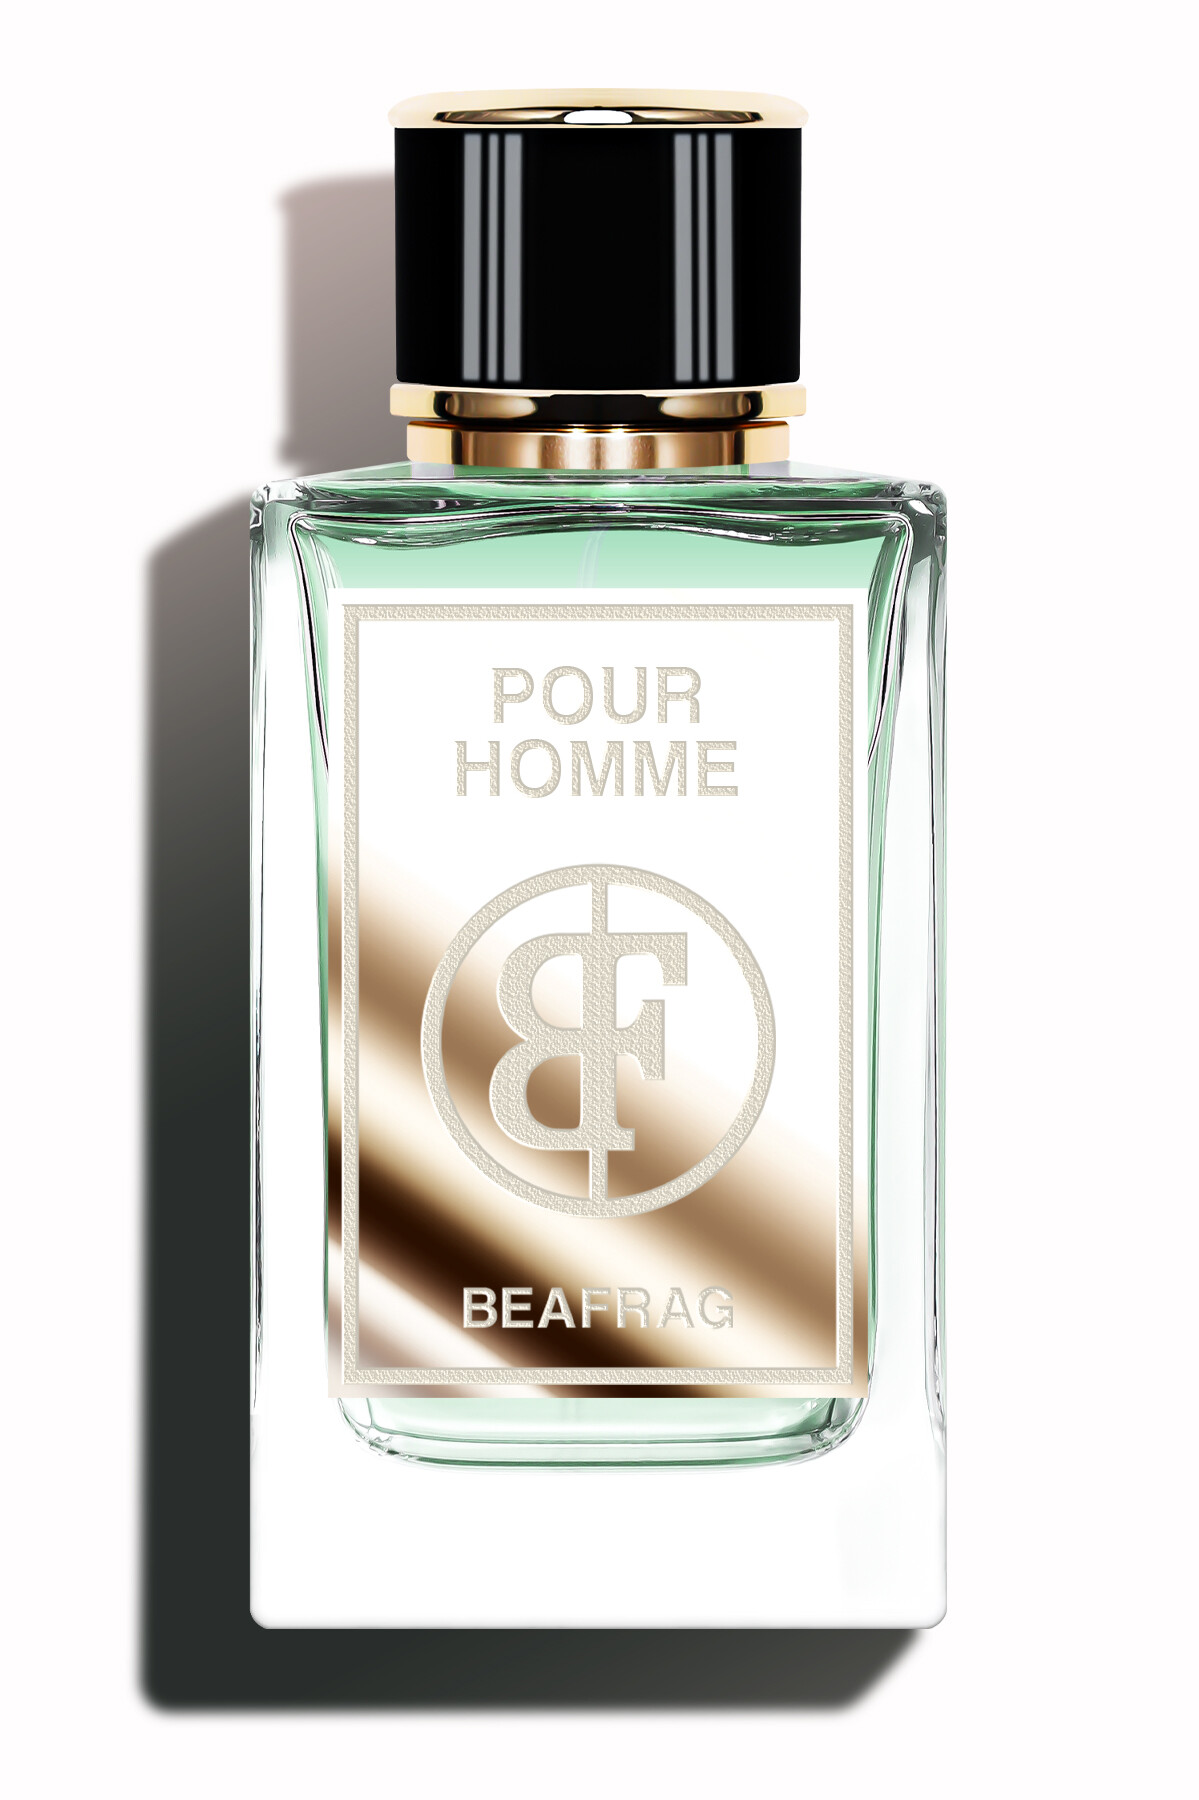 Pour Homme - 150 ml - Eau De Prfum - Beafrag